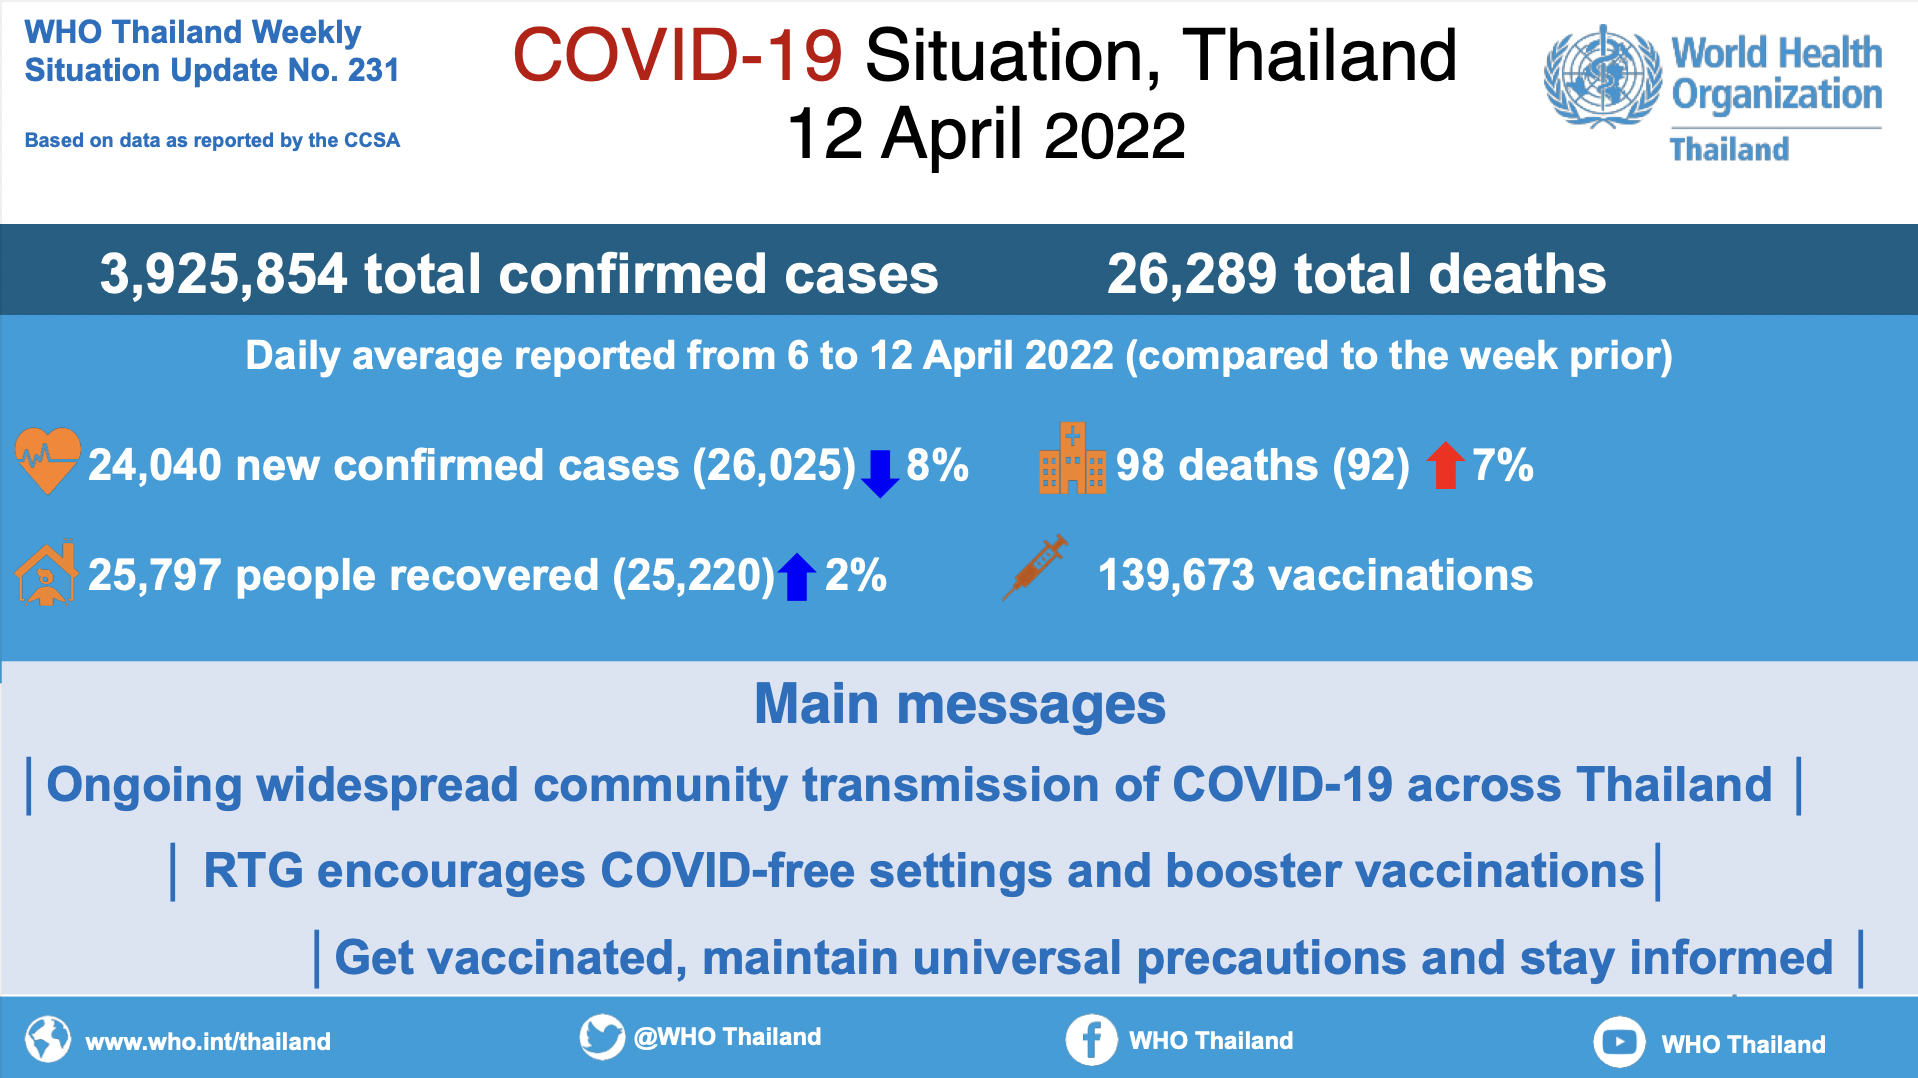 รายงานความคืบหน้าสถานการณ์โควิด-19 ประจำสัปดาห์ในประเทศไทย ฉบับที่ 231 ประจำวันที่ 12 เม.ย. 2022